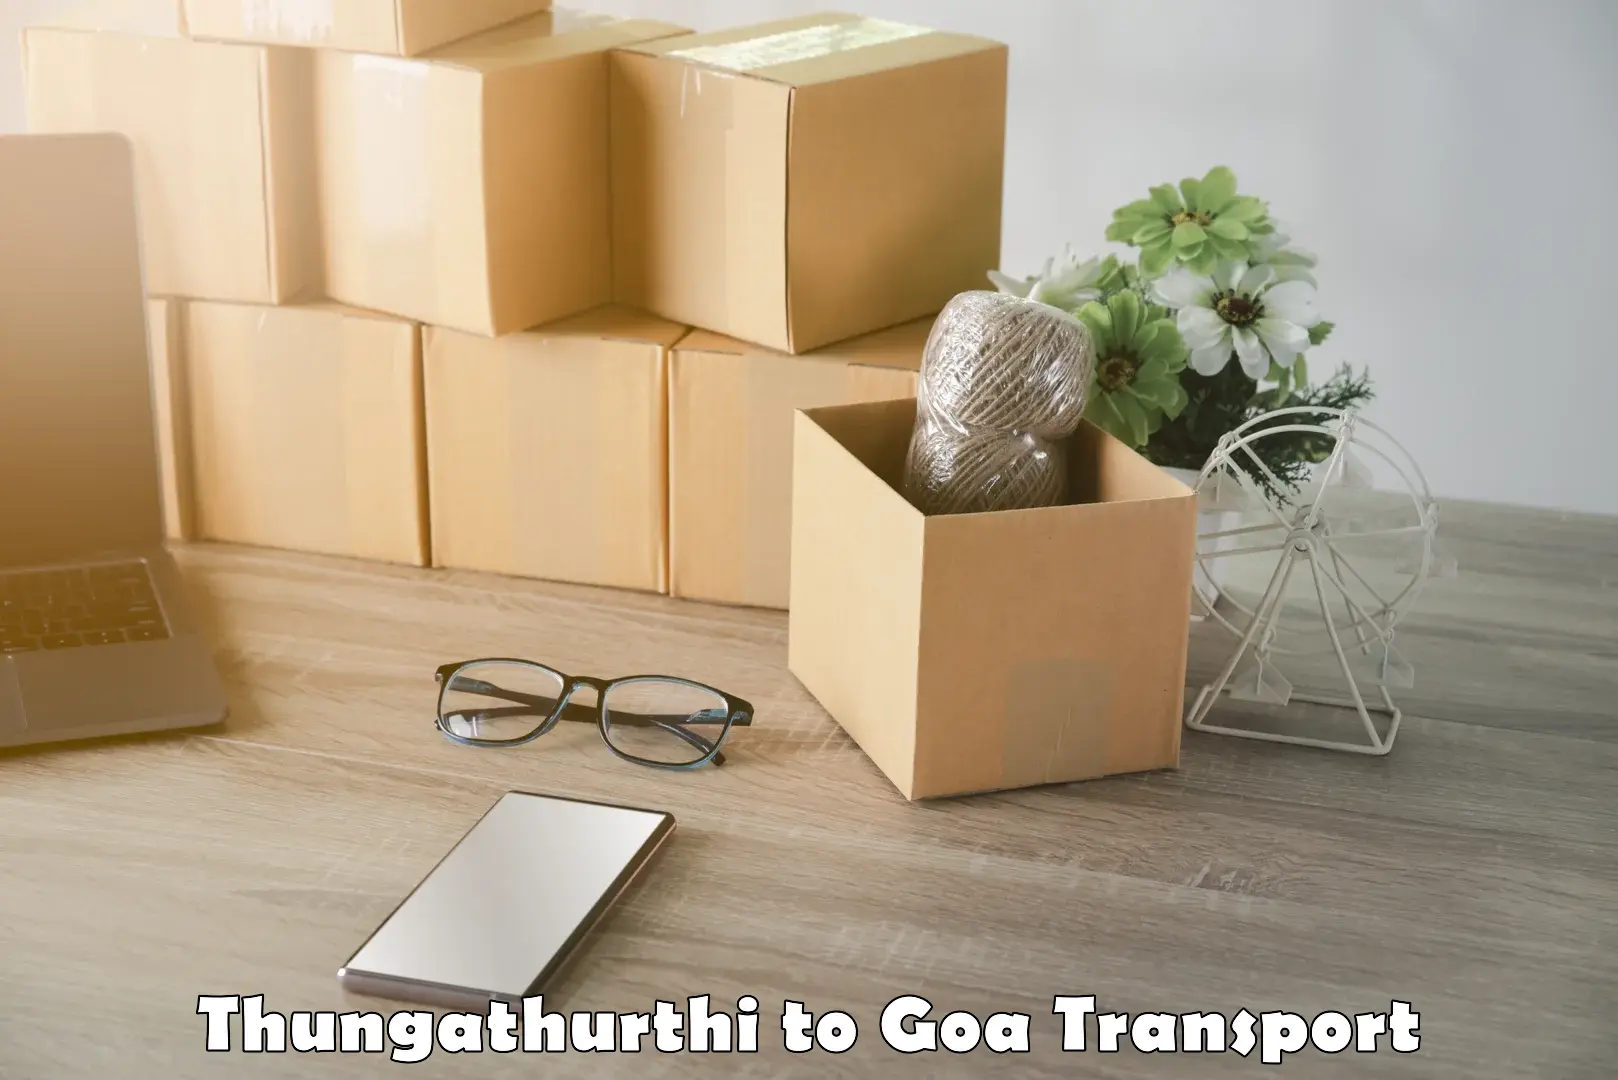 Transport shared services Thungathurthi to Bardez